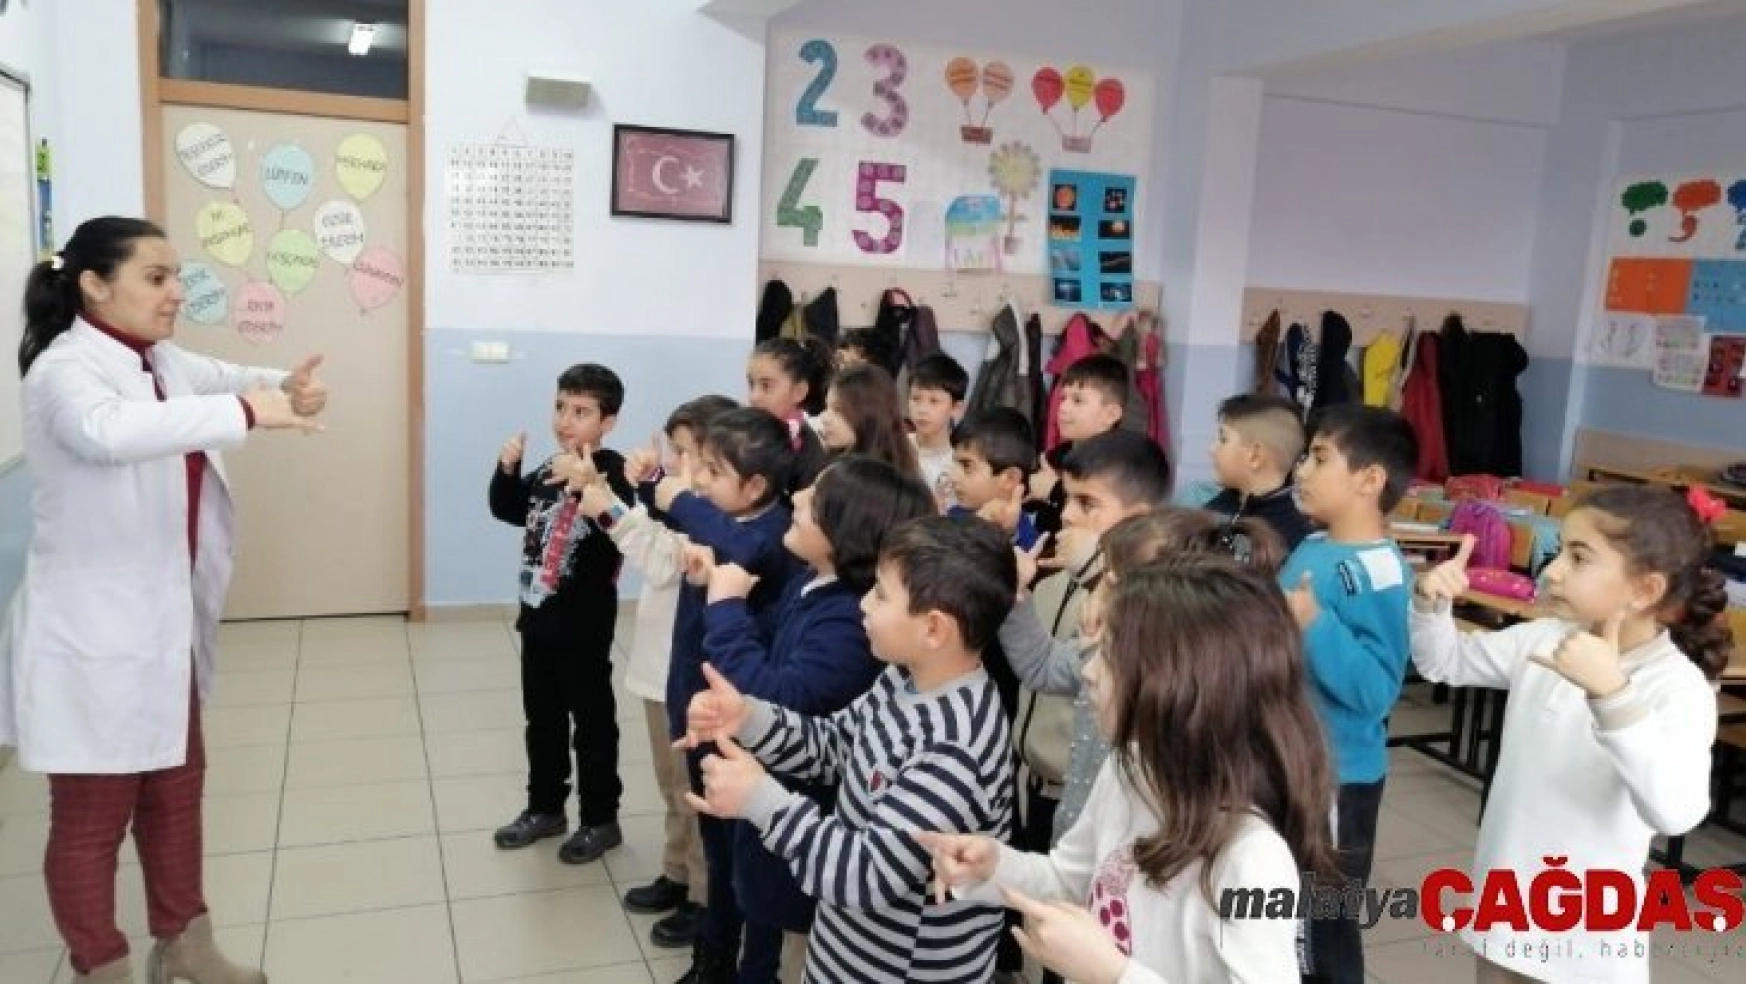 Öğrenciler işaret dili ile şarkı söylüyorlar